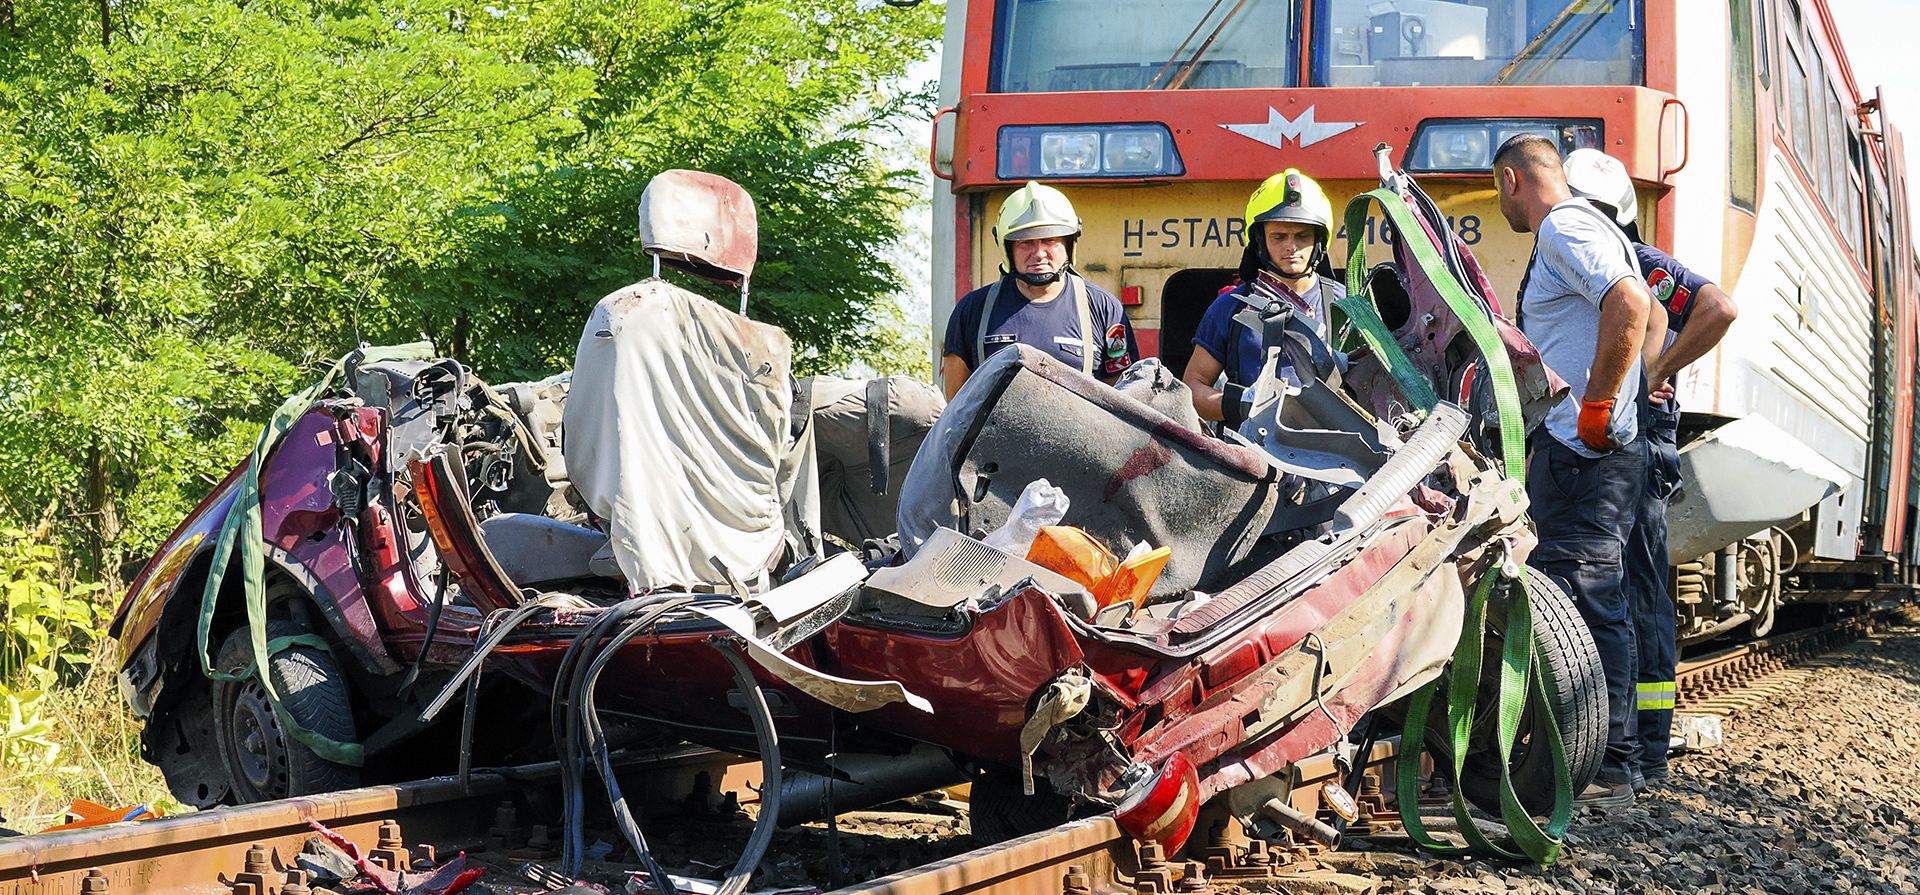 Bomberos peritan una escena donde un vehículo fue destrozado por un tren de pasajeros, cerca de Kunfeherto, en el sur de Hungría, el lunes 5 de septiembre de 2022. La policía húngara dice que siete personas murieron después de que un tren chocó con un vehículo en un cruce ferroviario en sur de Hungría.